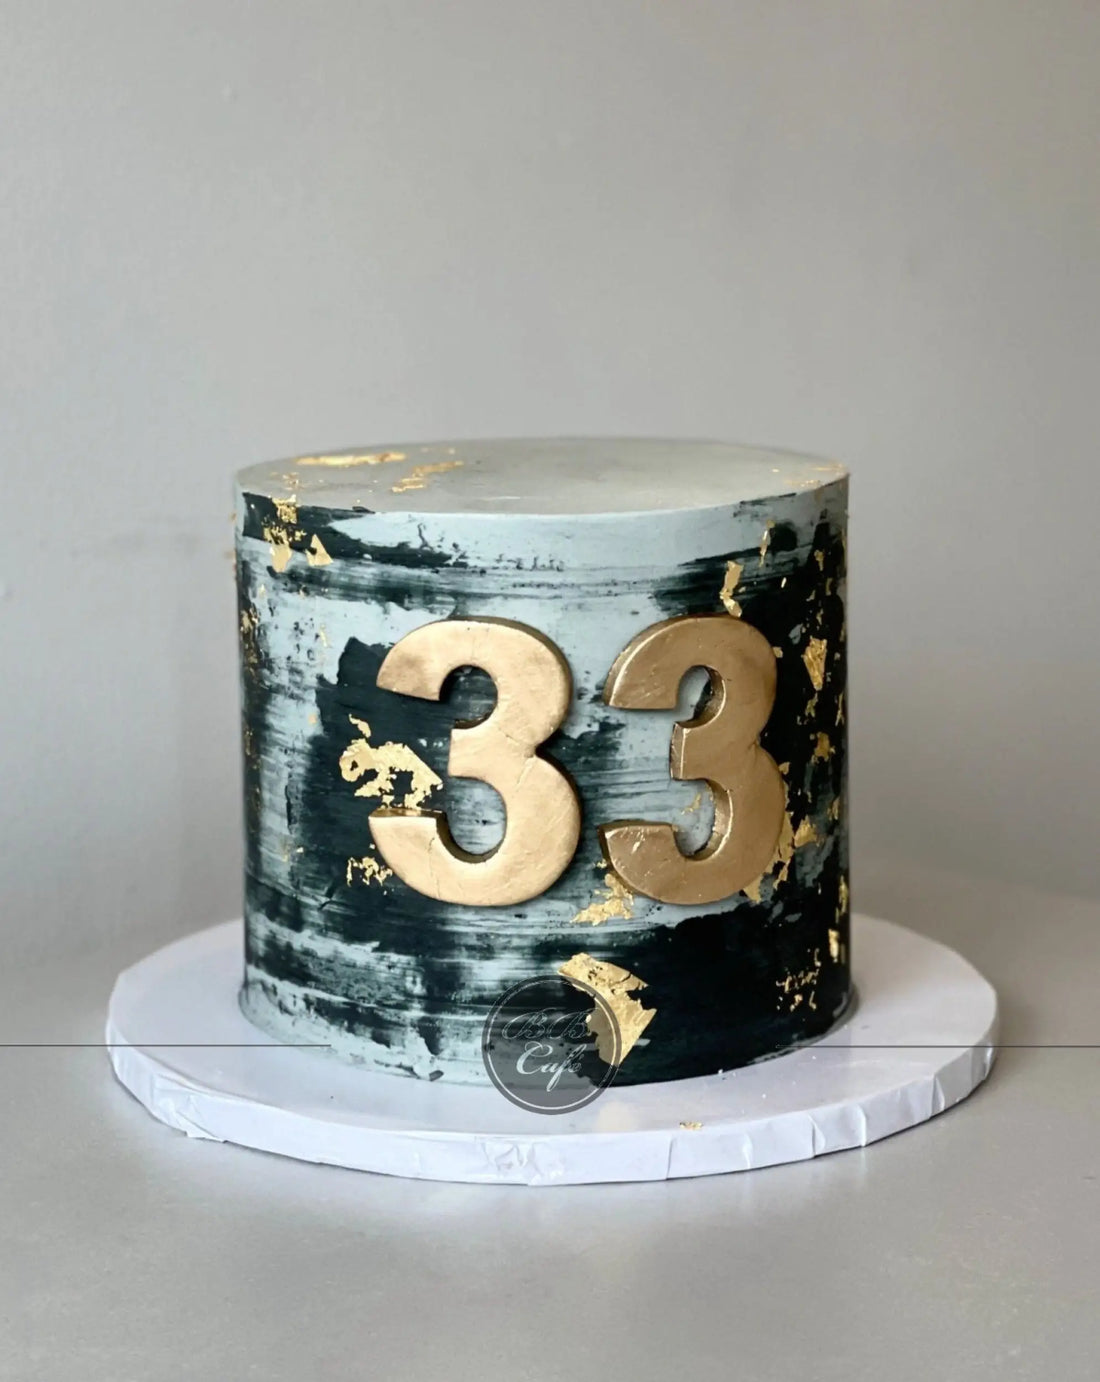 Abstract on buttercream - custom cake